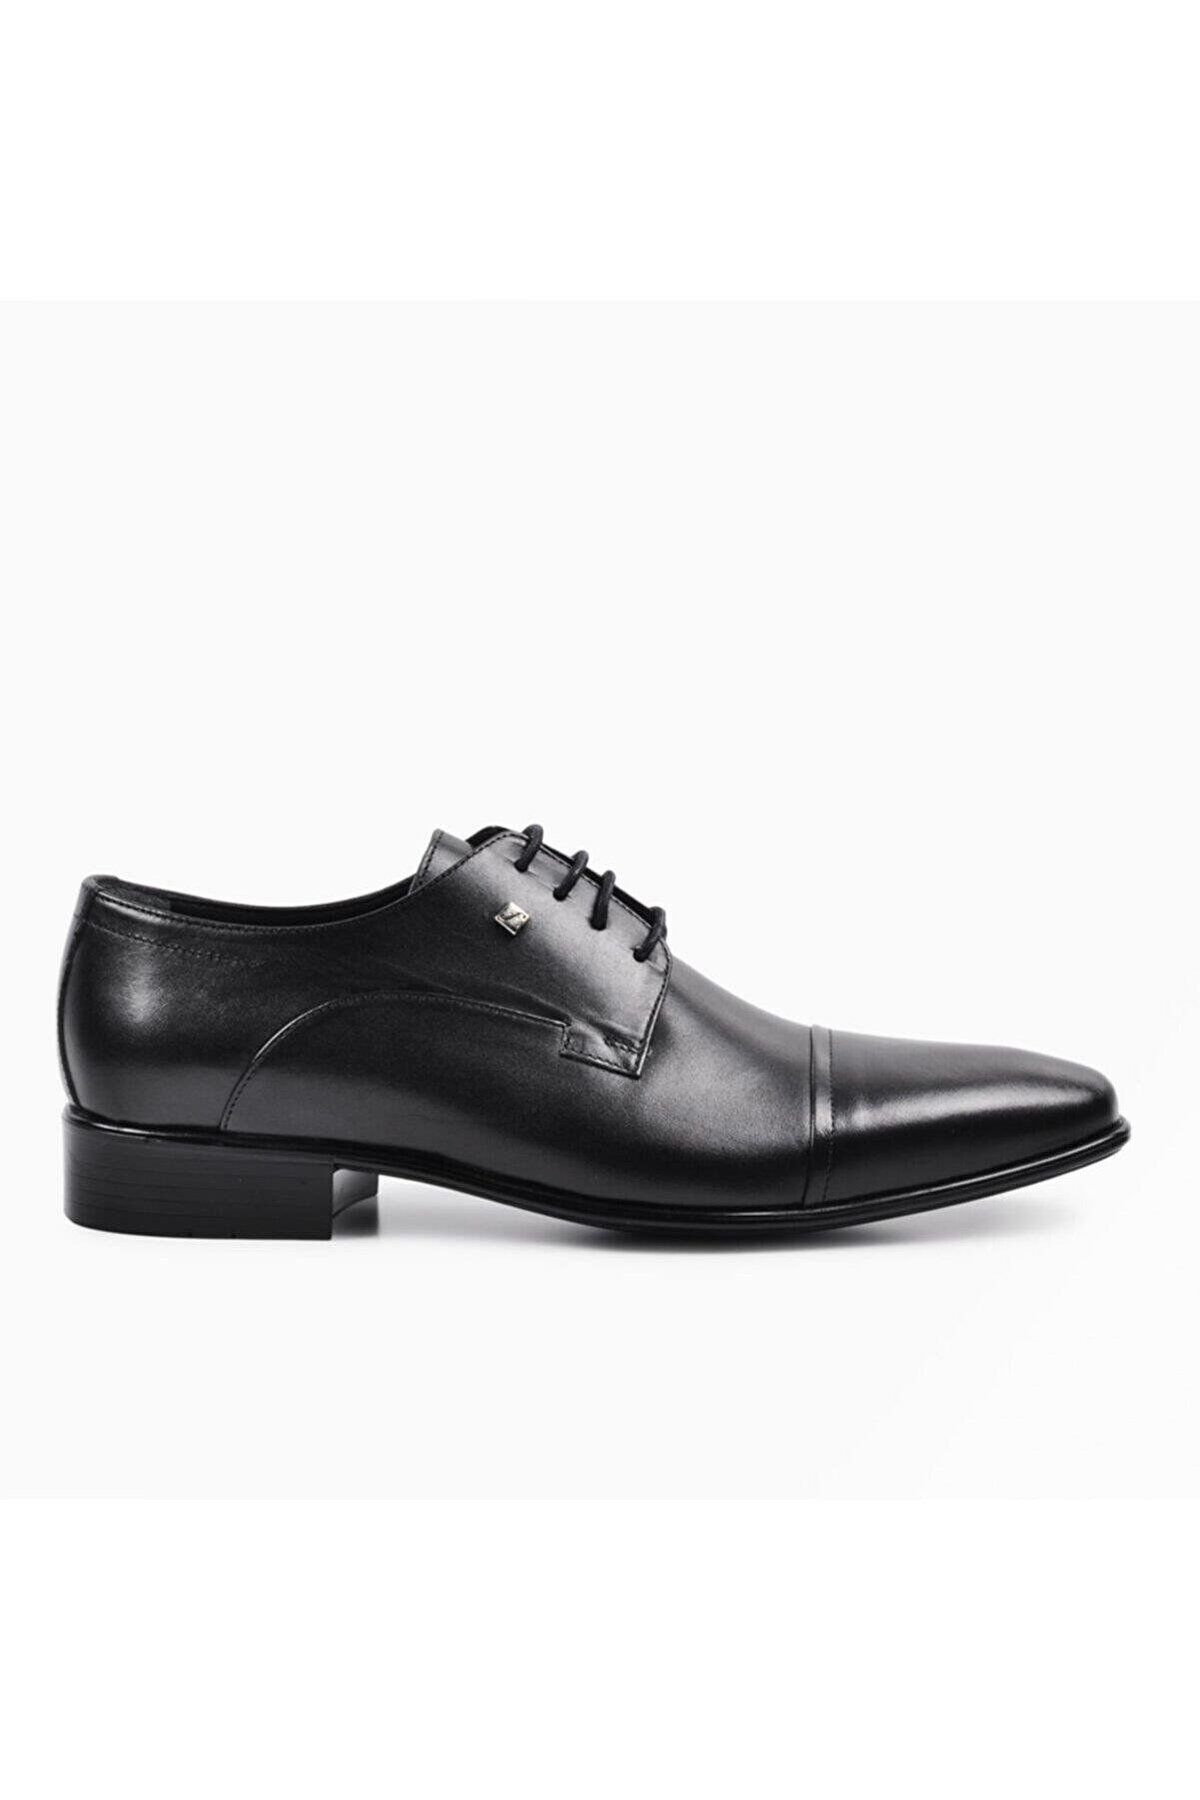 Fosco 2239-4 Hakiki Deri Erkek Klasik Ayakkabı Siyah